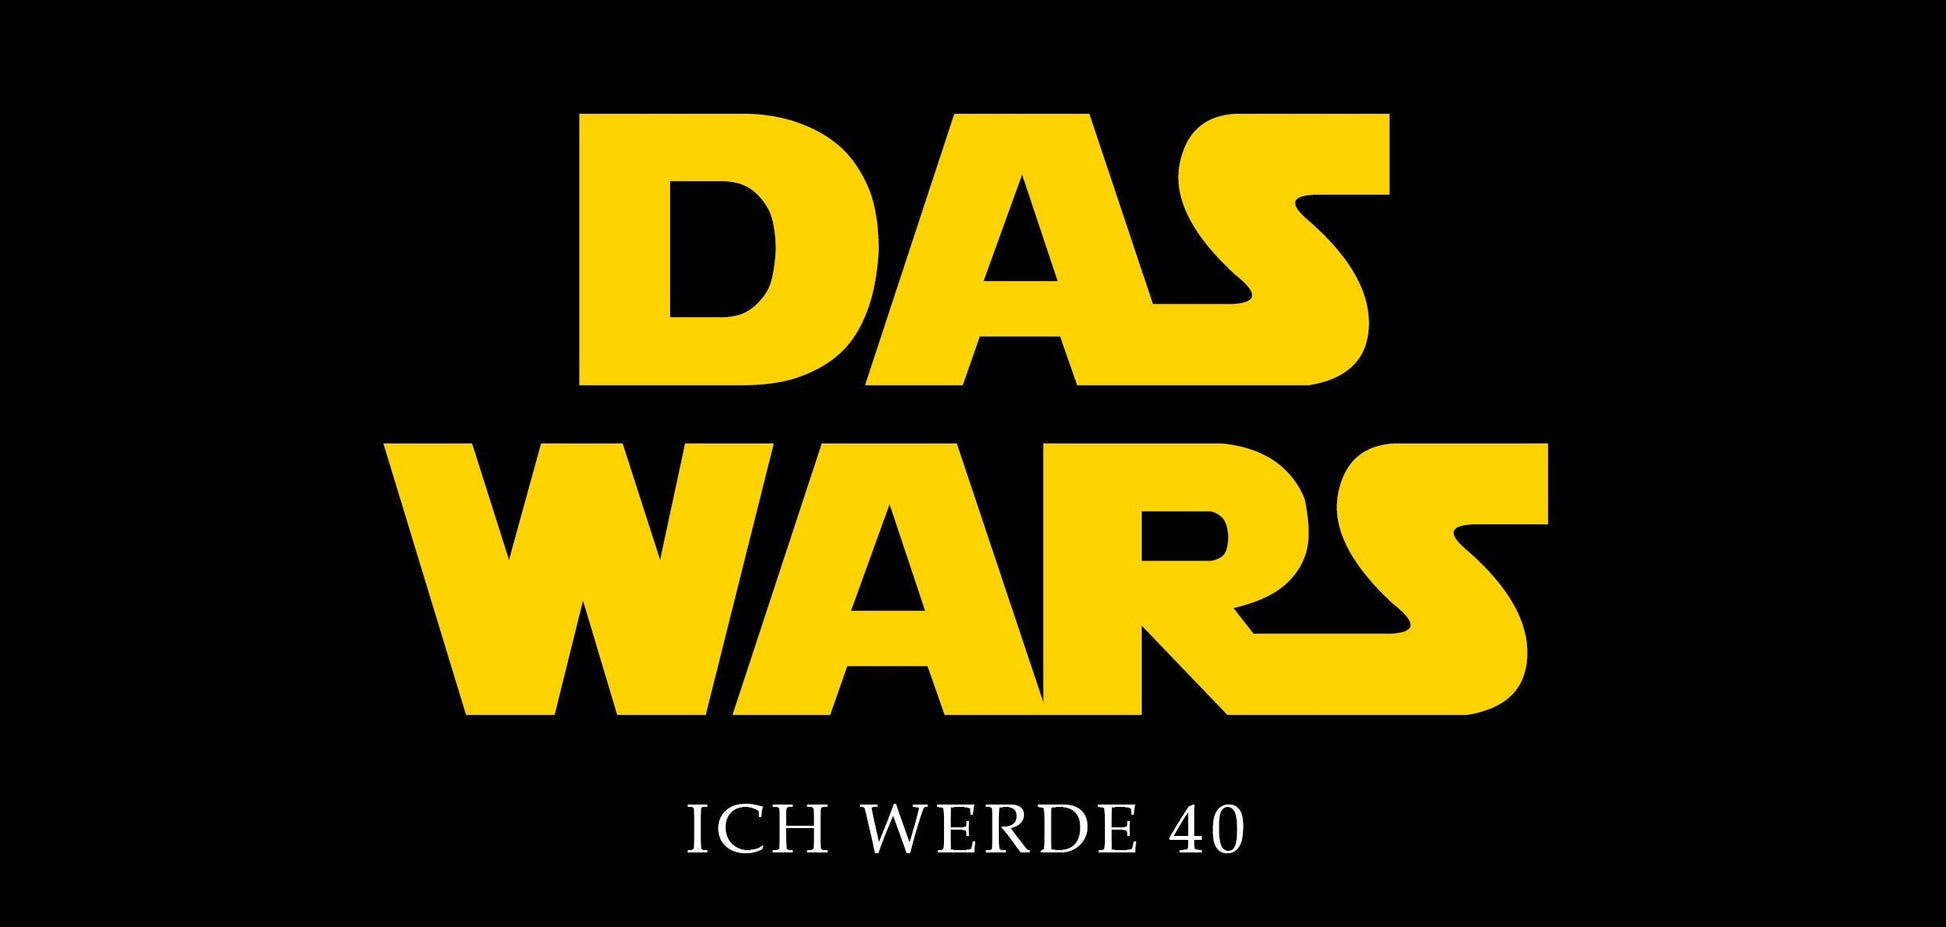 Einladung Zum 40. Geburtstag: Star Wars - Das Wars Individuelle Einladung